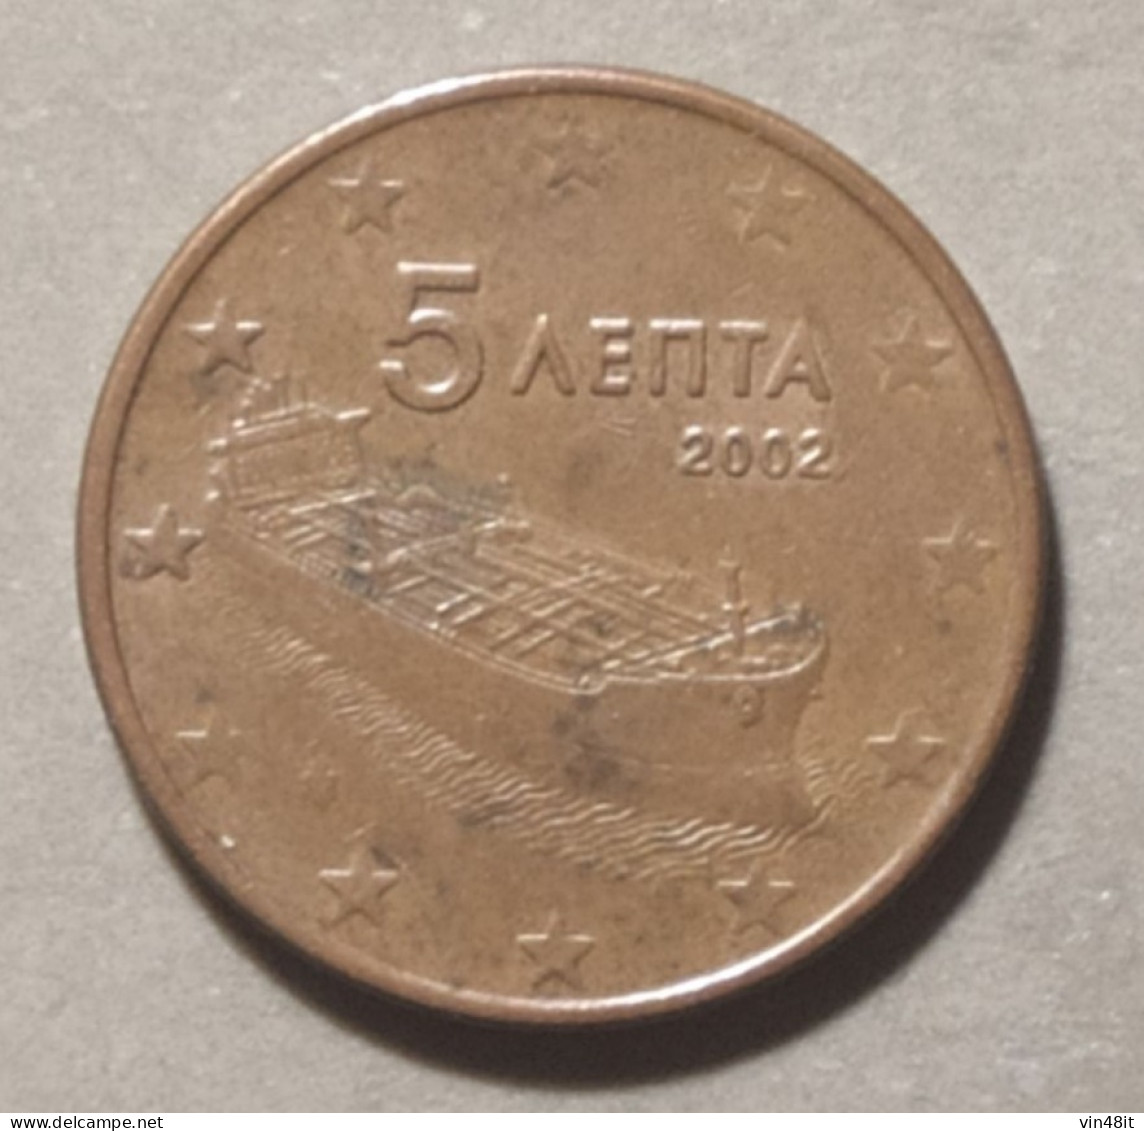 2002  -  GRECIA - MONETA IN EURO - DEL VALORE  DI  5  CENTESIMI - USATA - Griechenland